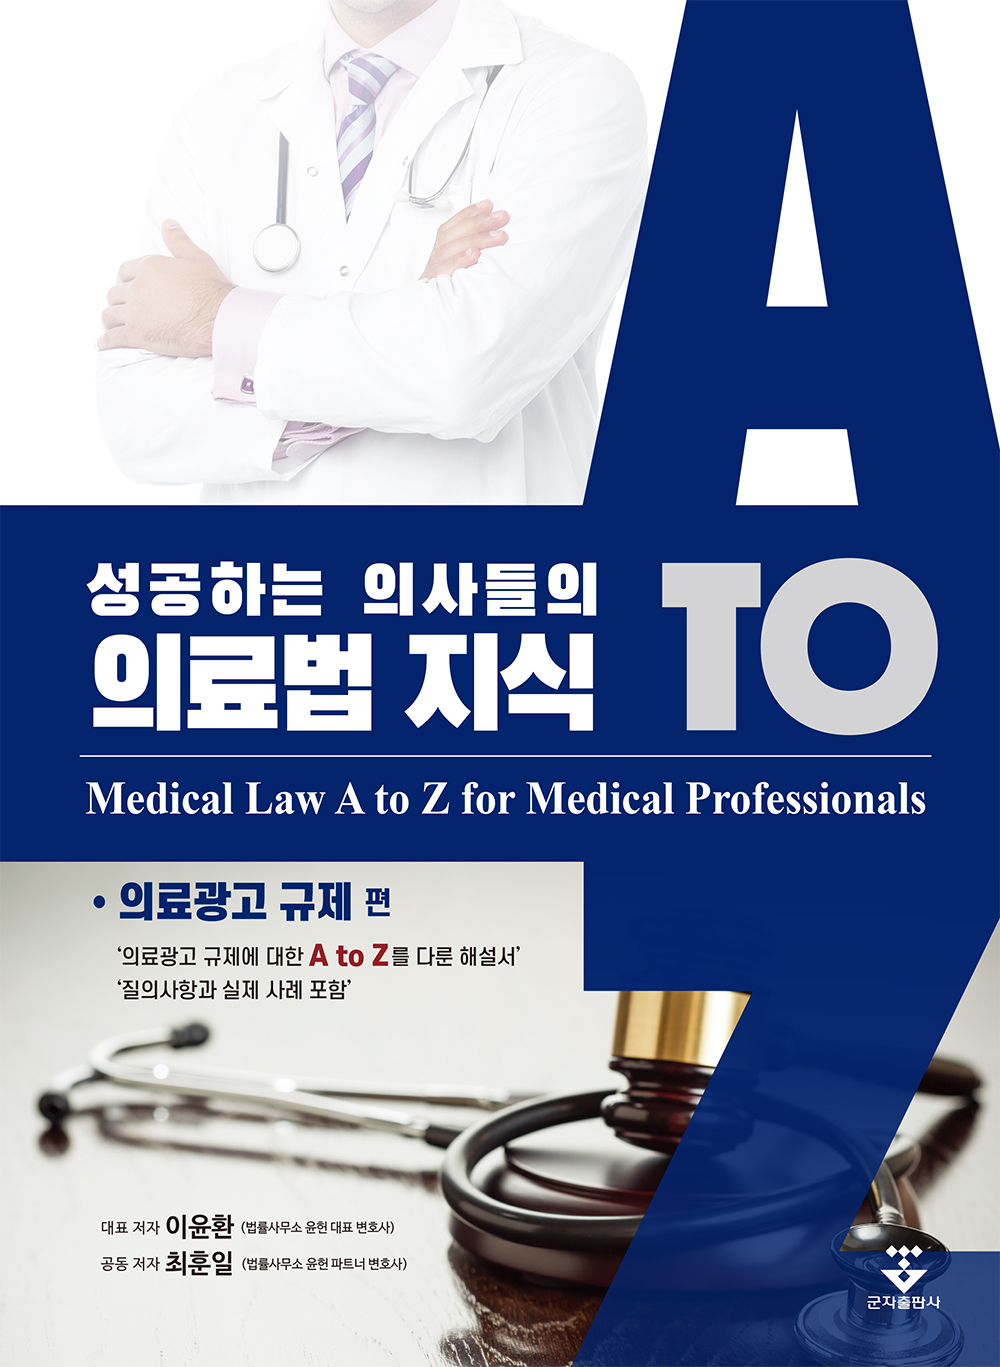 성공하는 의사들의 의료법 지식 (의료광고 규제